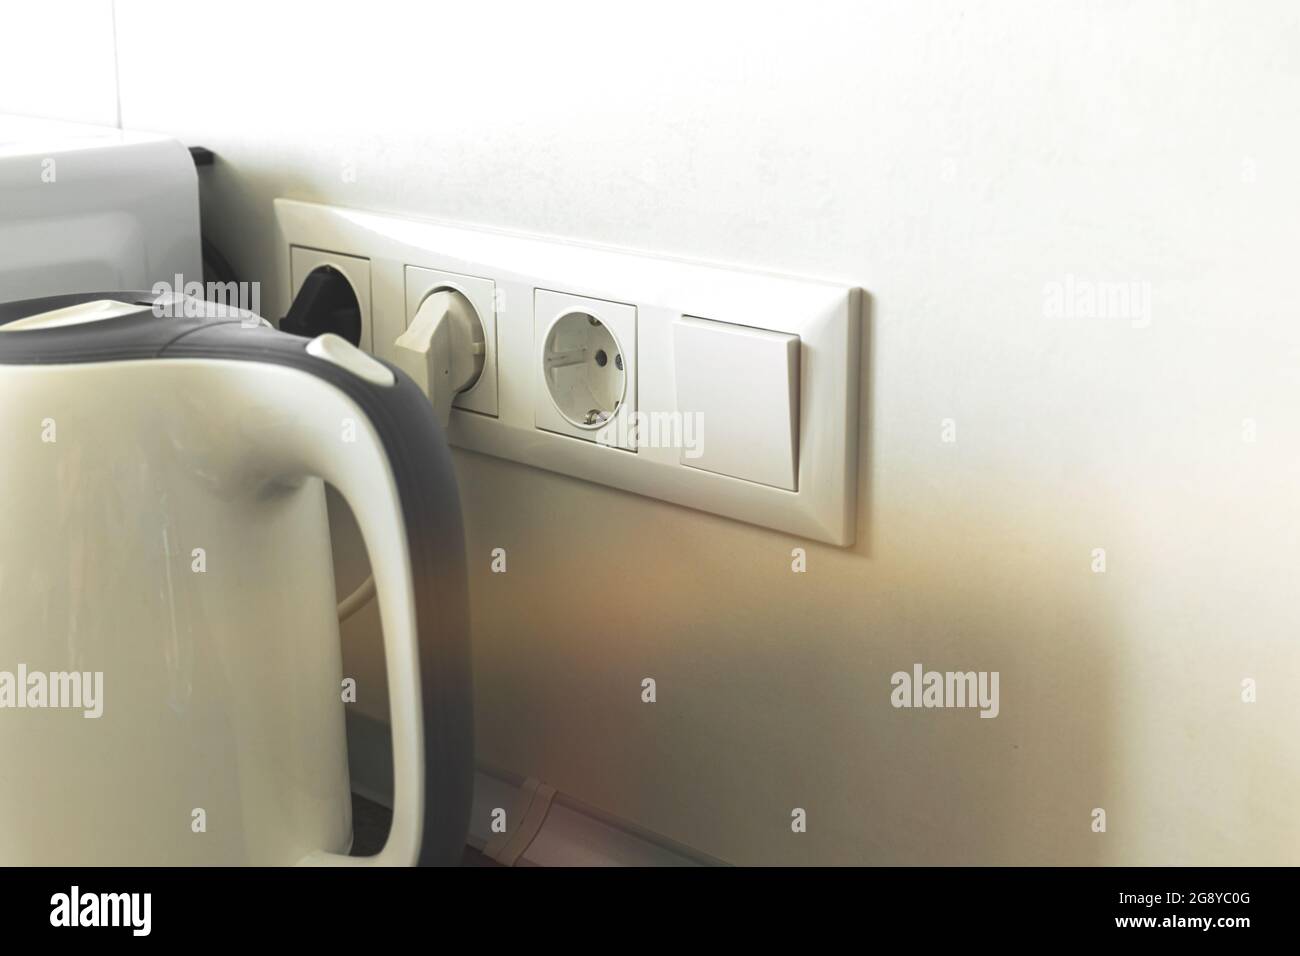 Wasserkocher Kabel in Steckdose in der modernen Küche Interieur  Stockfotografie - Alamy